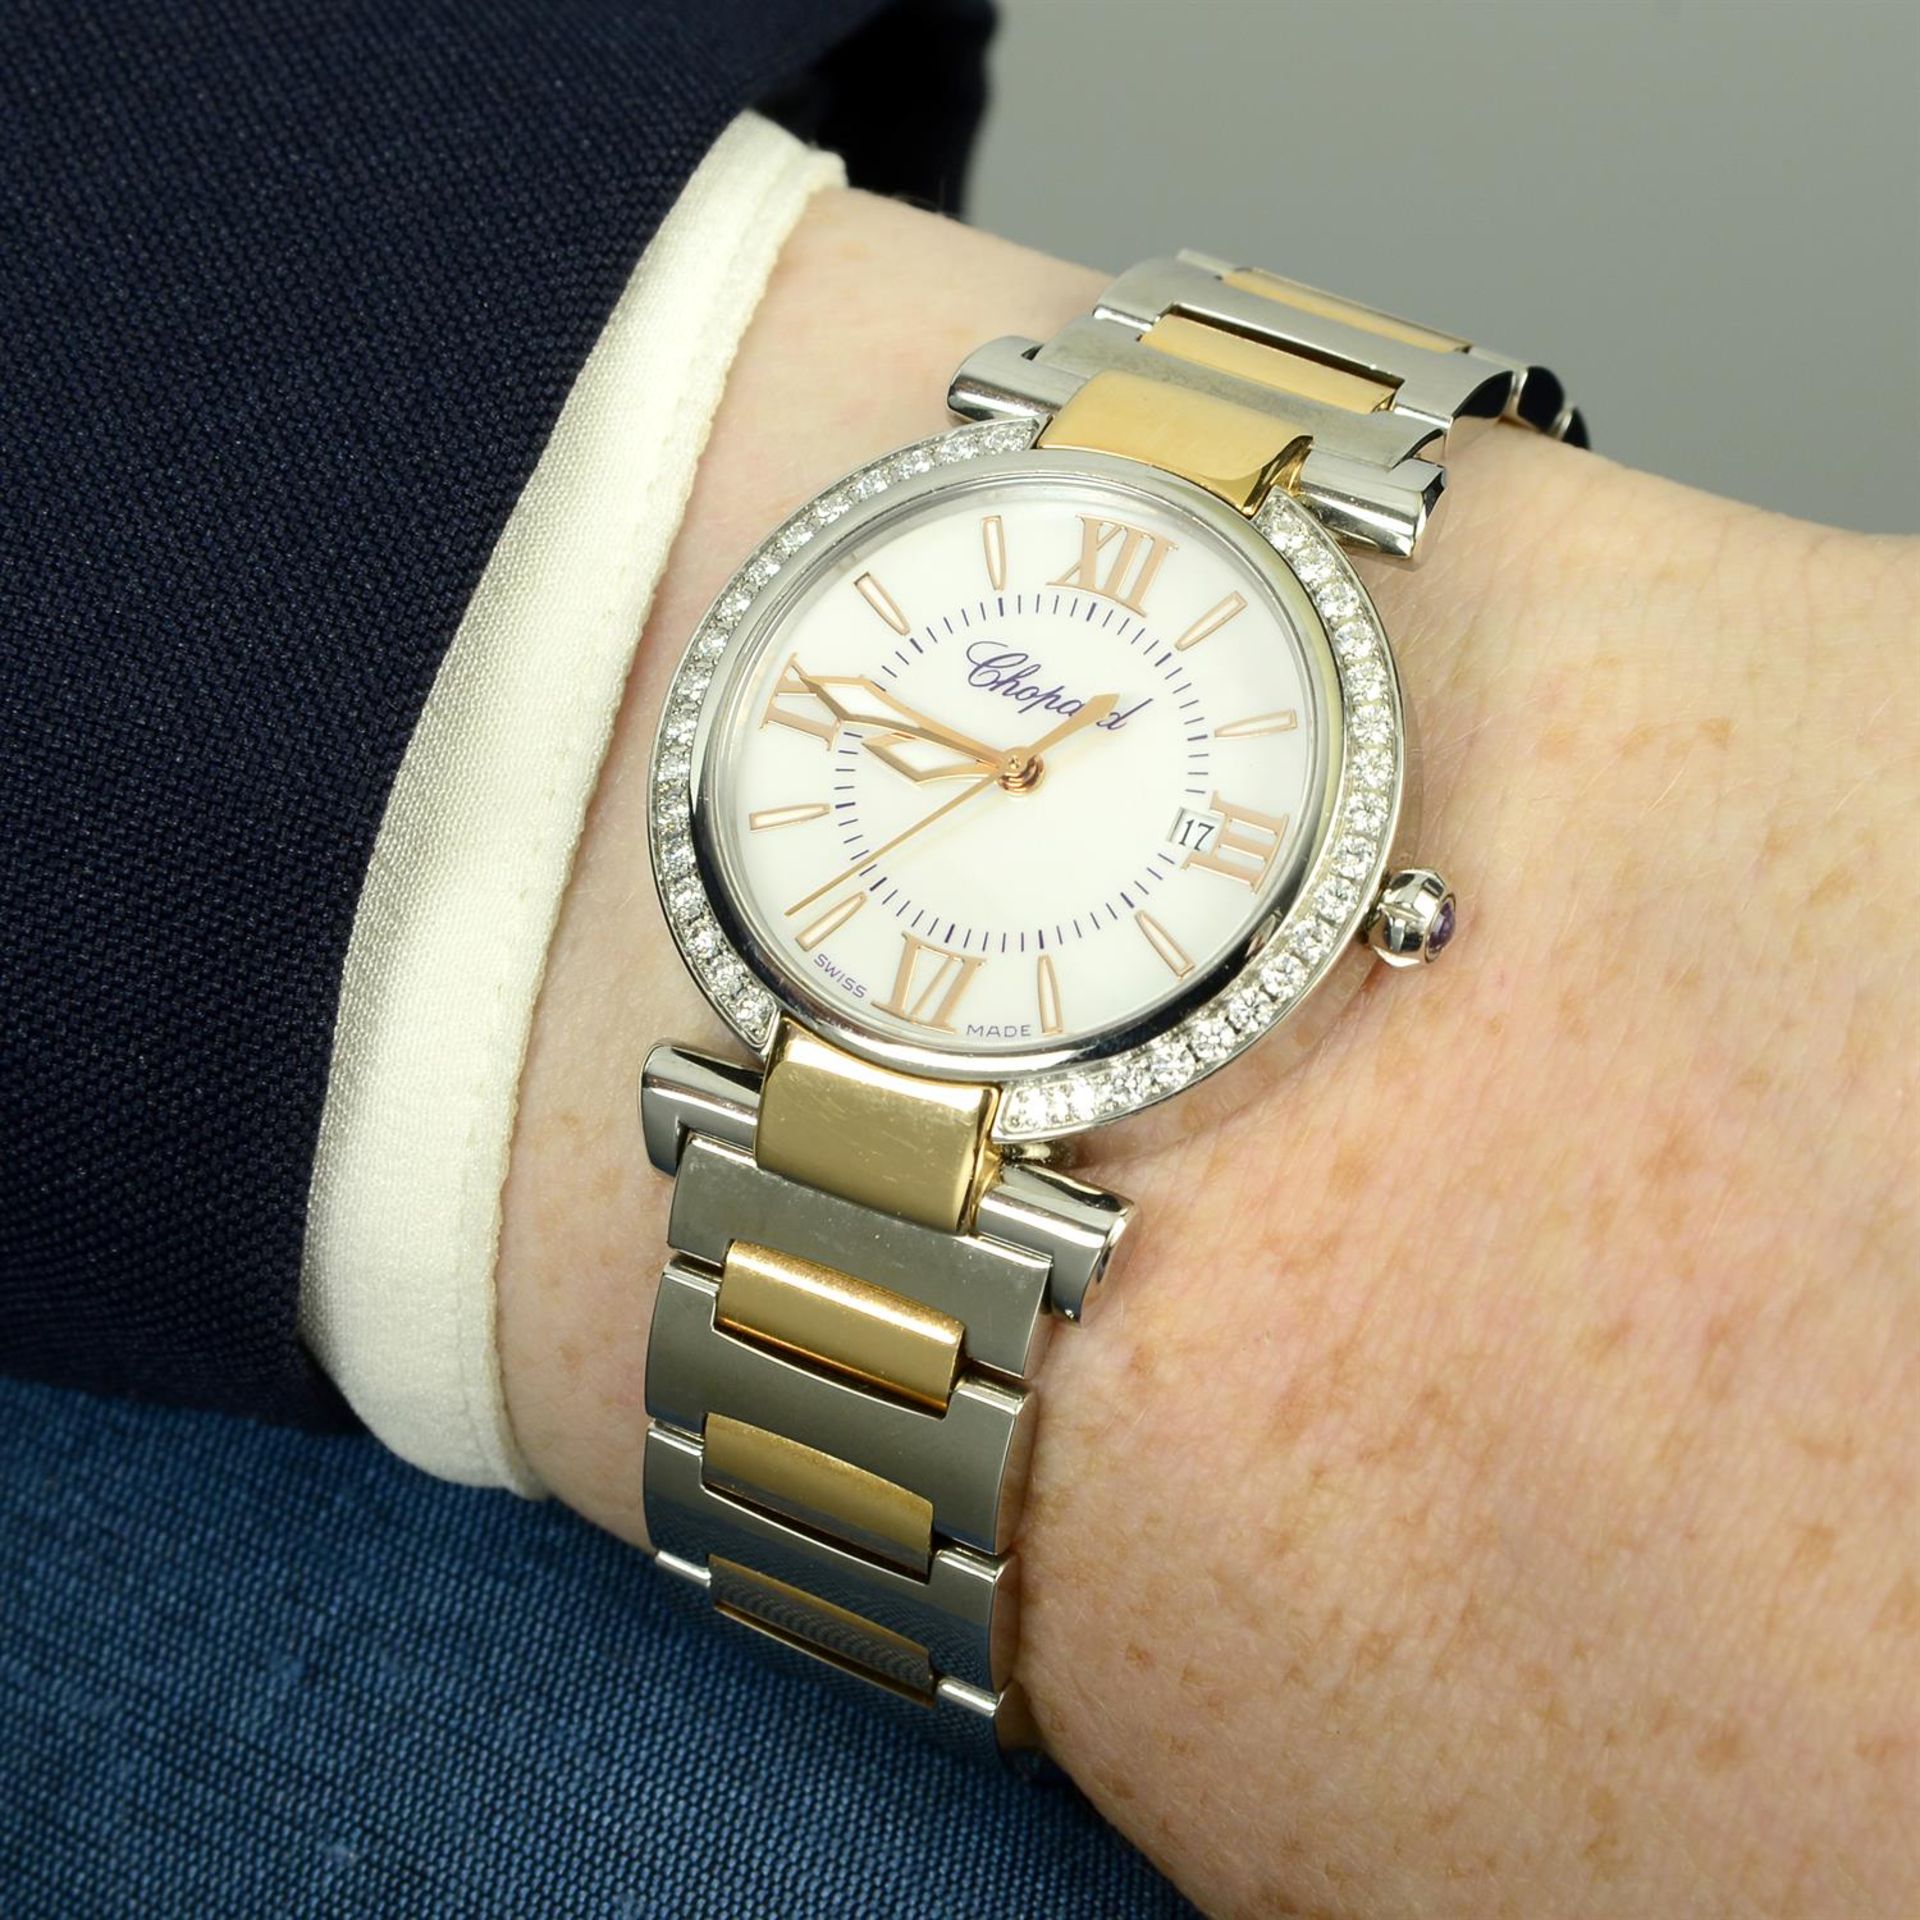 CHOPARD - a bi-metal Imperiale bracelet watch, 28mm. - Image 6 of 6